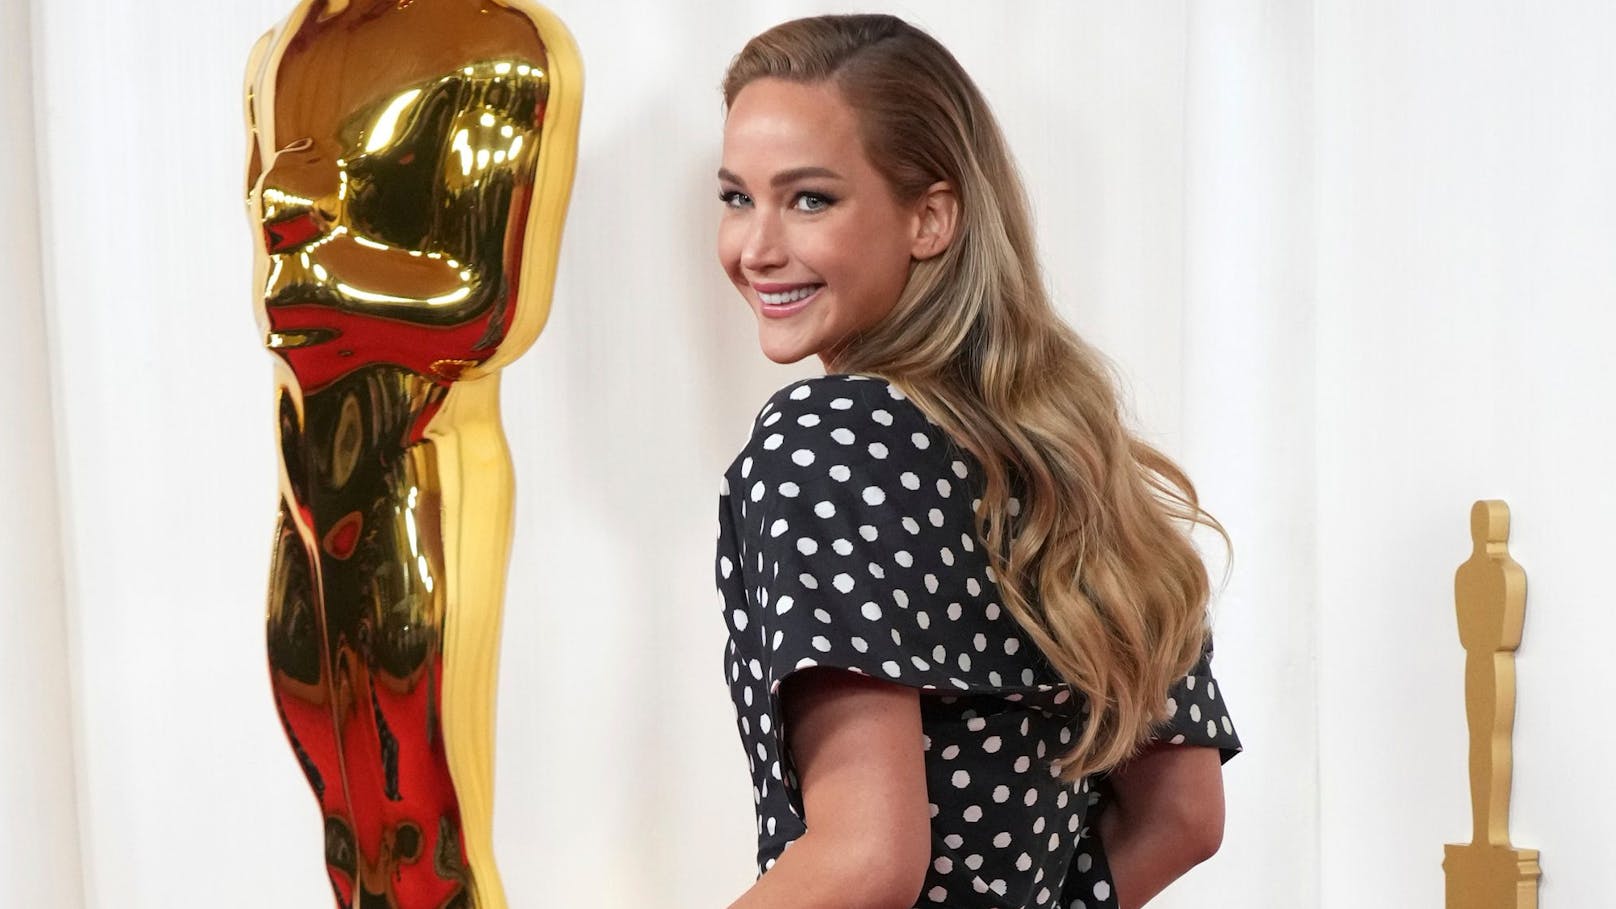 Darum stecken in ihrem Oscar-Kleid 1.500 Arbeitsstunden